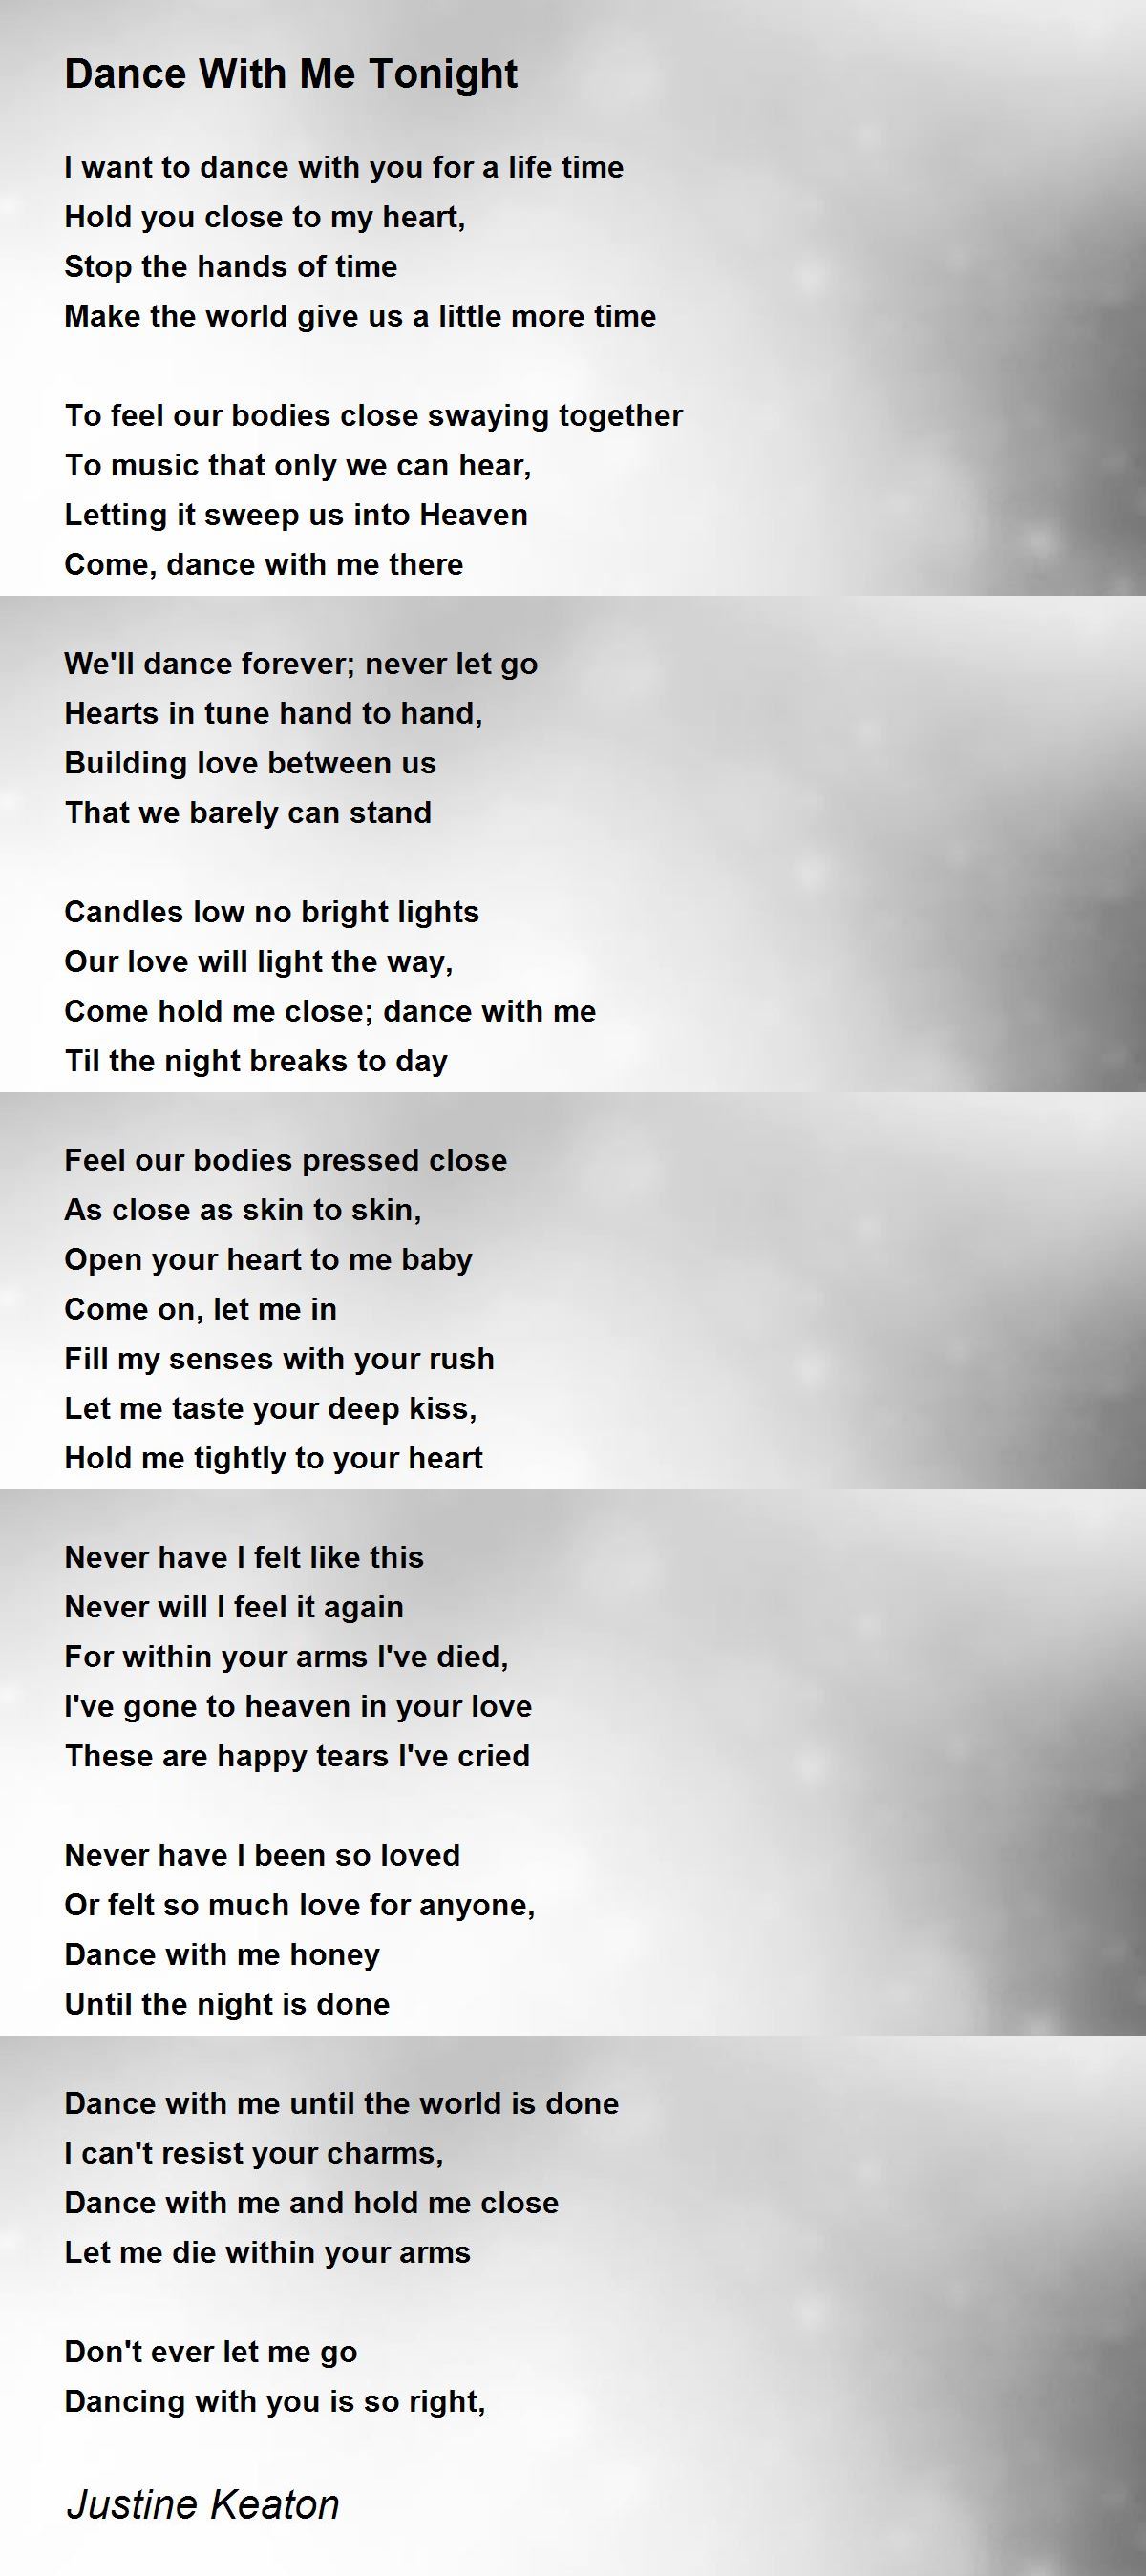 First Kiss - First Kiss Poem by Justine Keaton